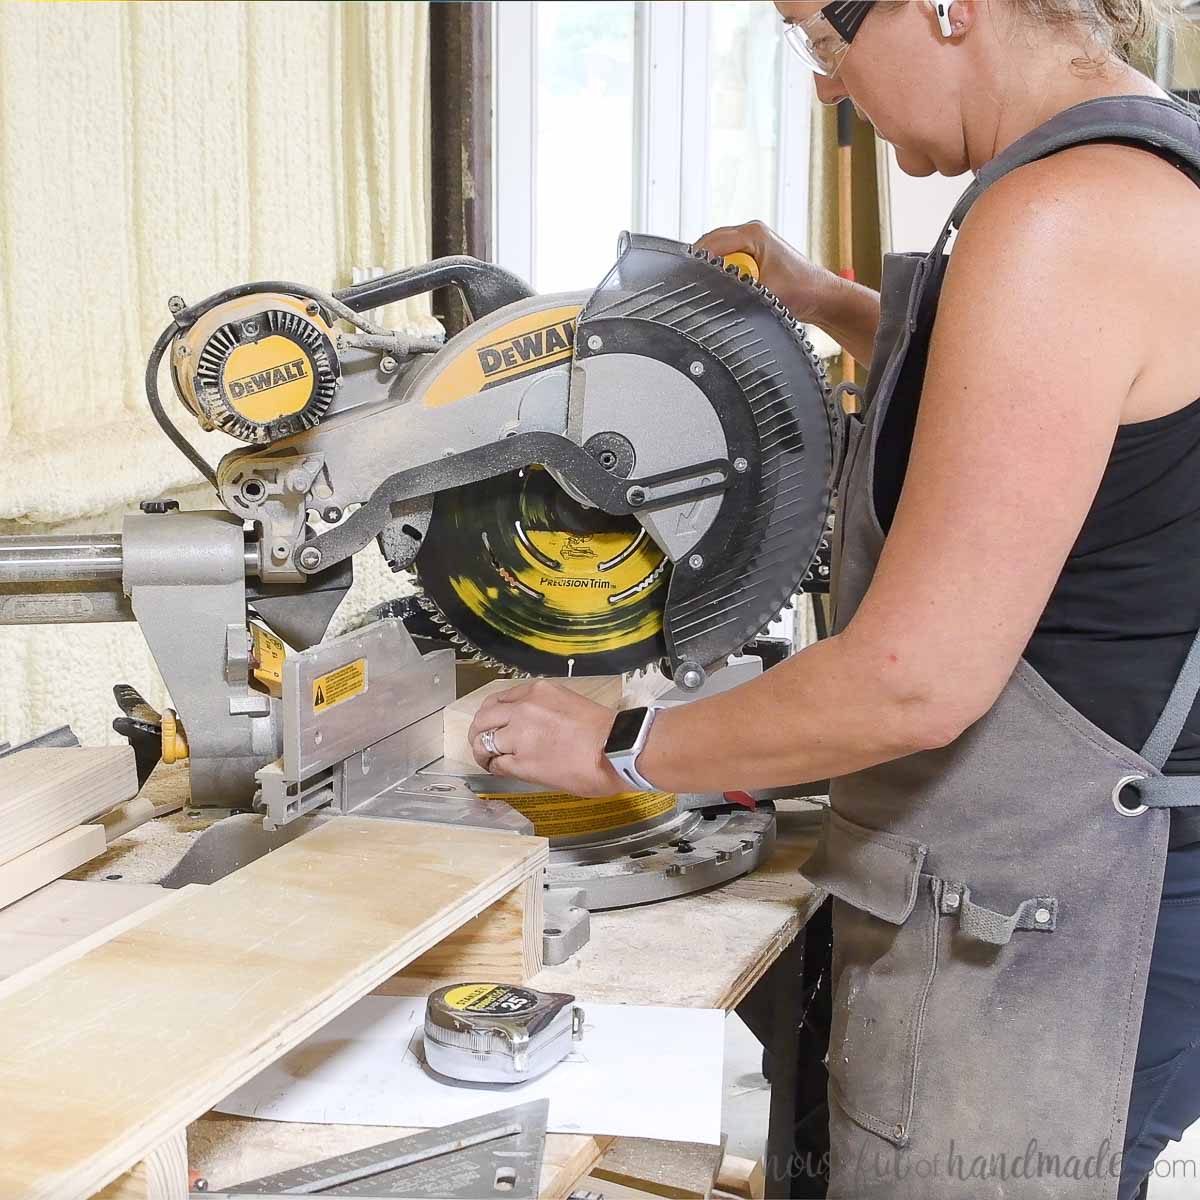 Cutting scrap wood pieces on a Dewalt miter saw. 